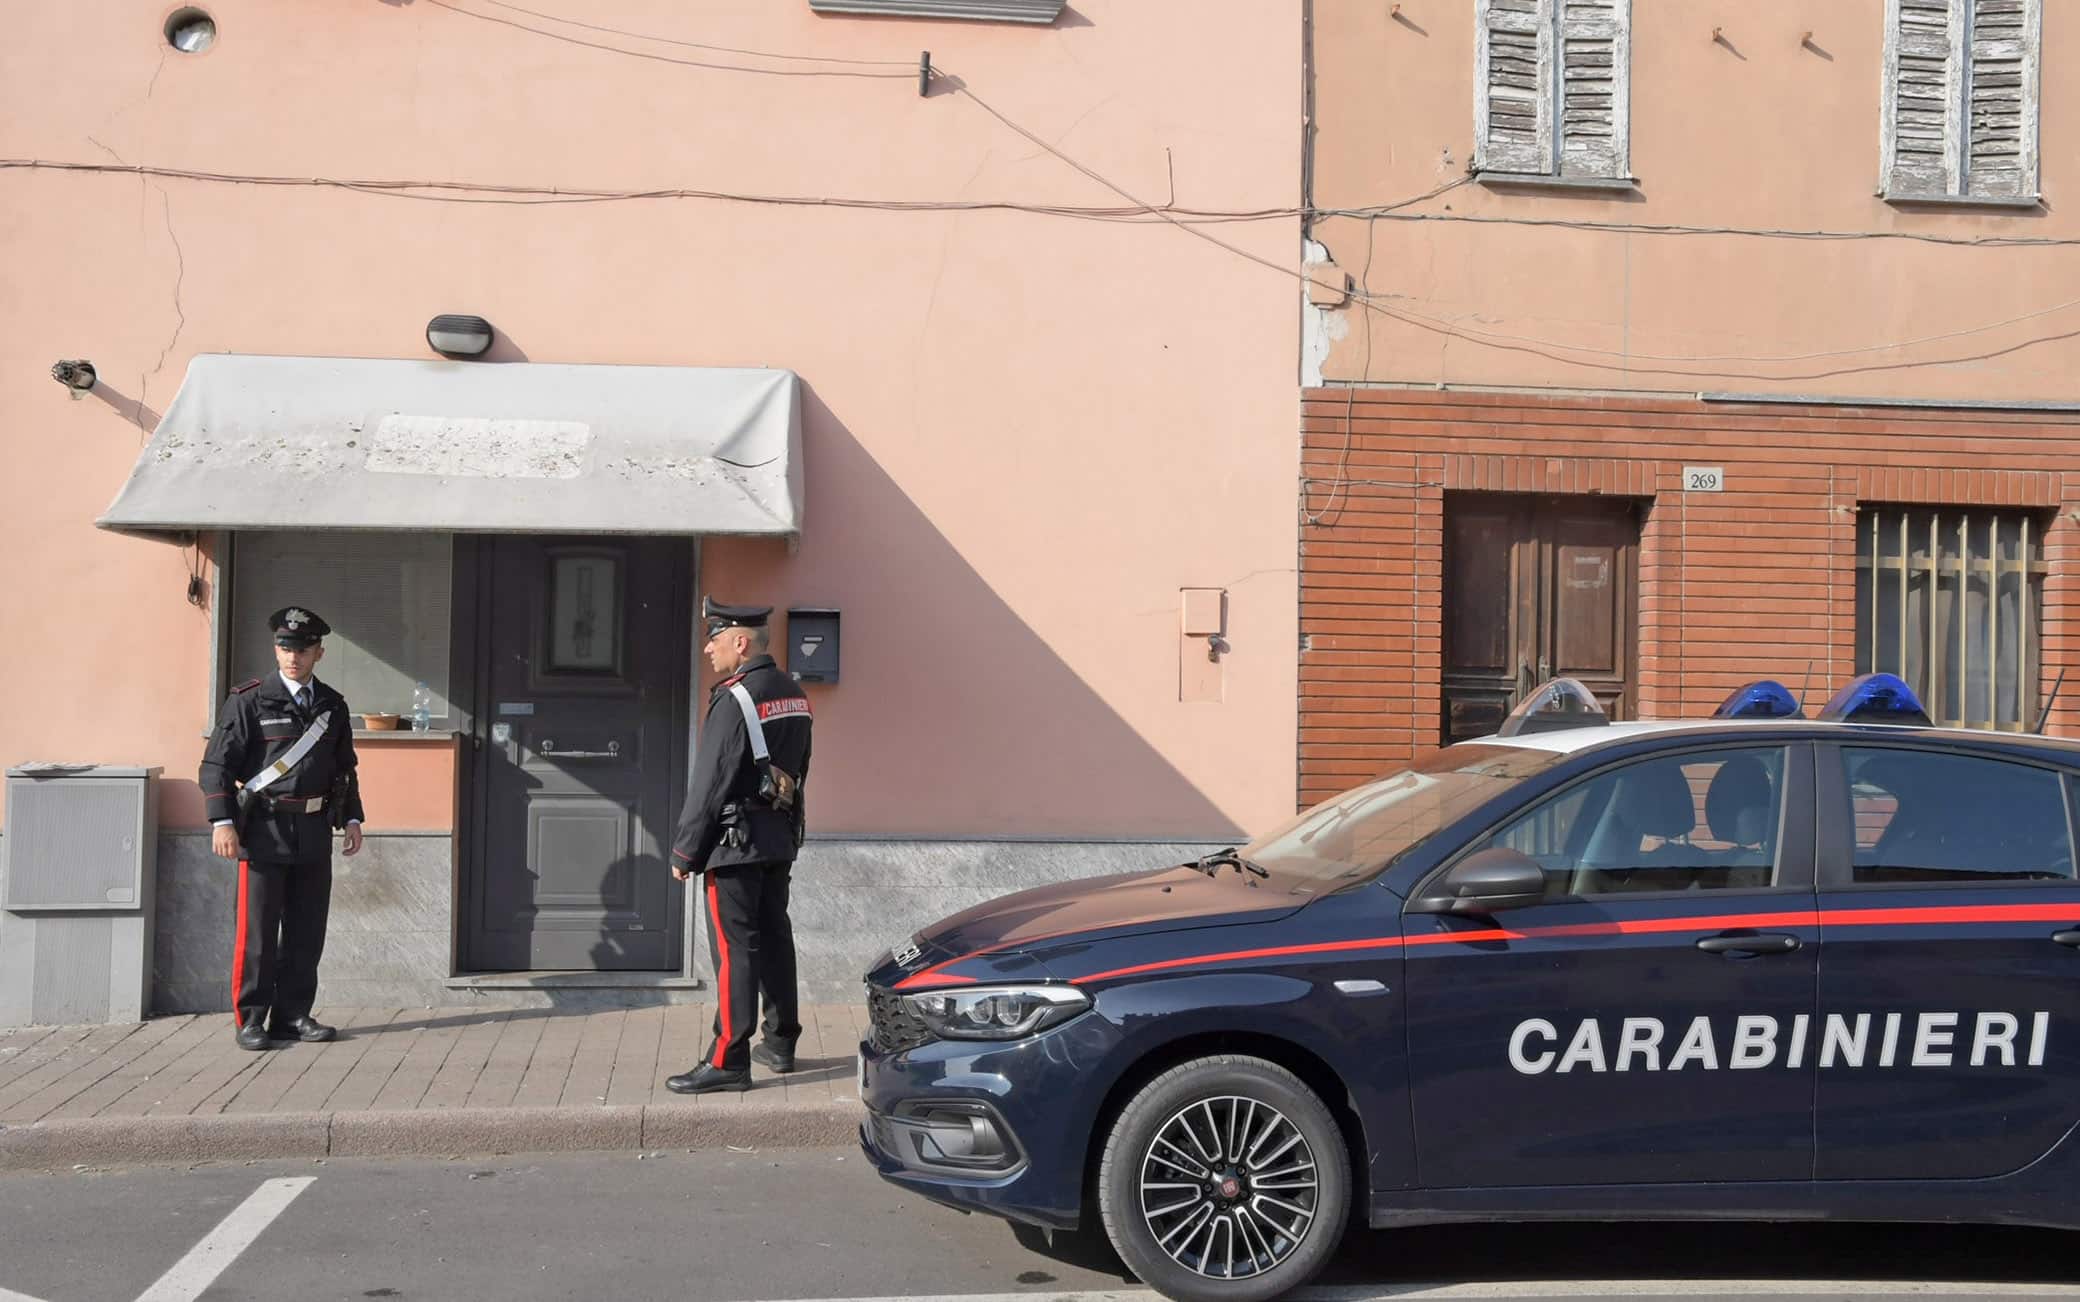 chignolo po ( pavia )  - tentato omicidio, accoltellamento in via 25 aprile, carabinieri sul luogo del delitto - foto torres 